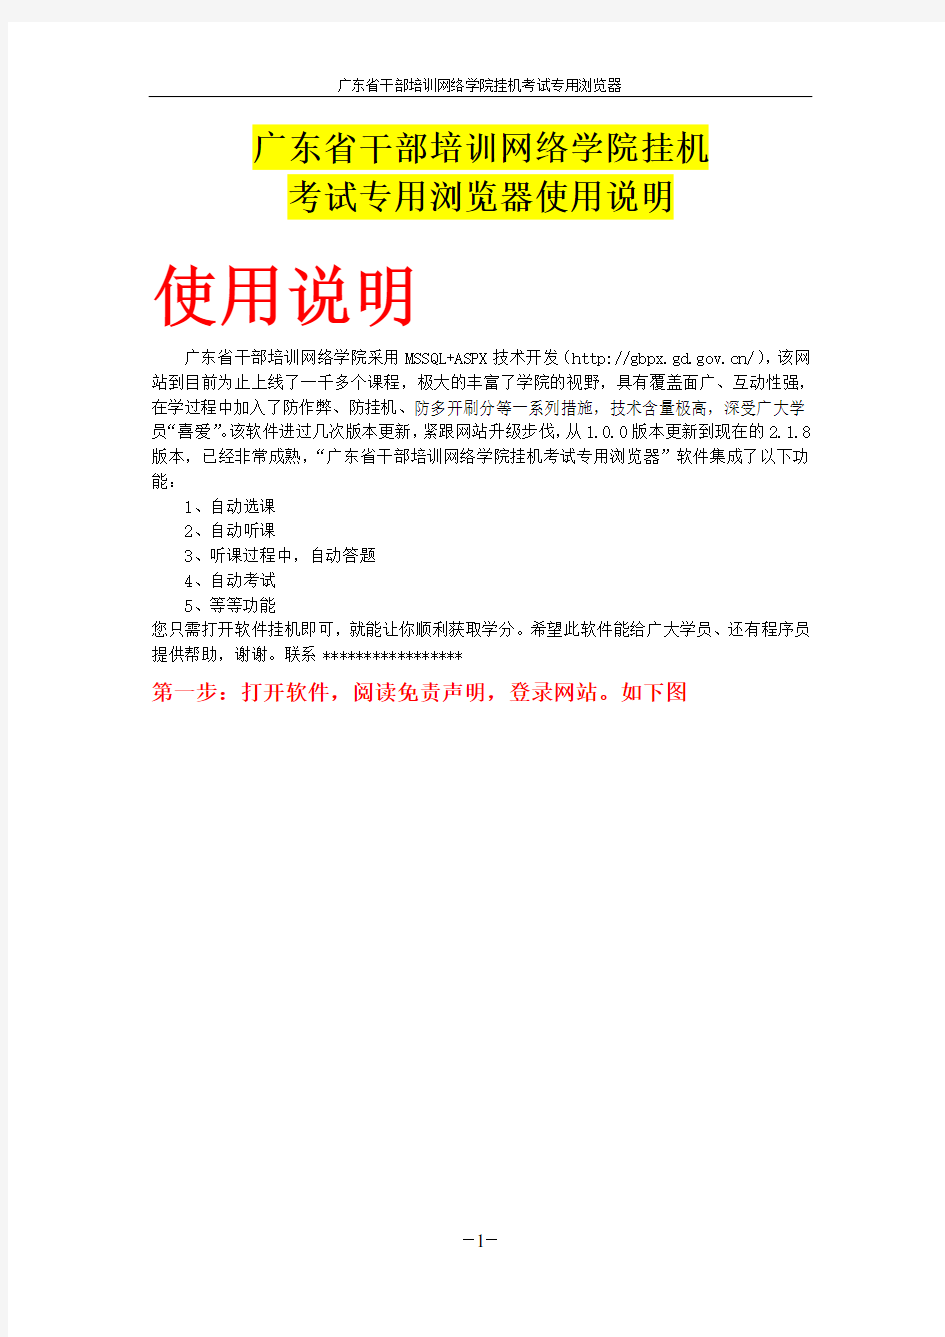 广东省干部培训网络学院挂机考试专用浏览器使用说明